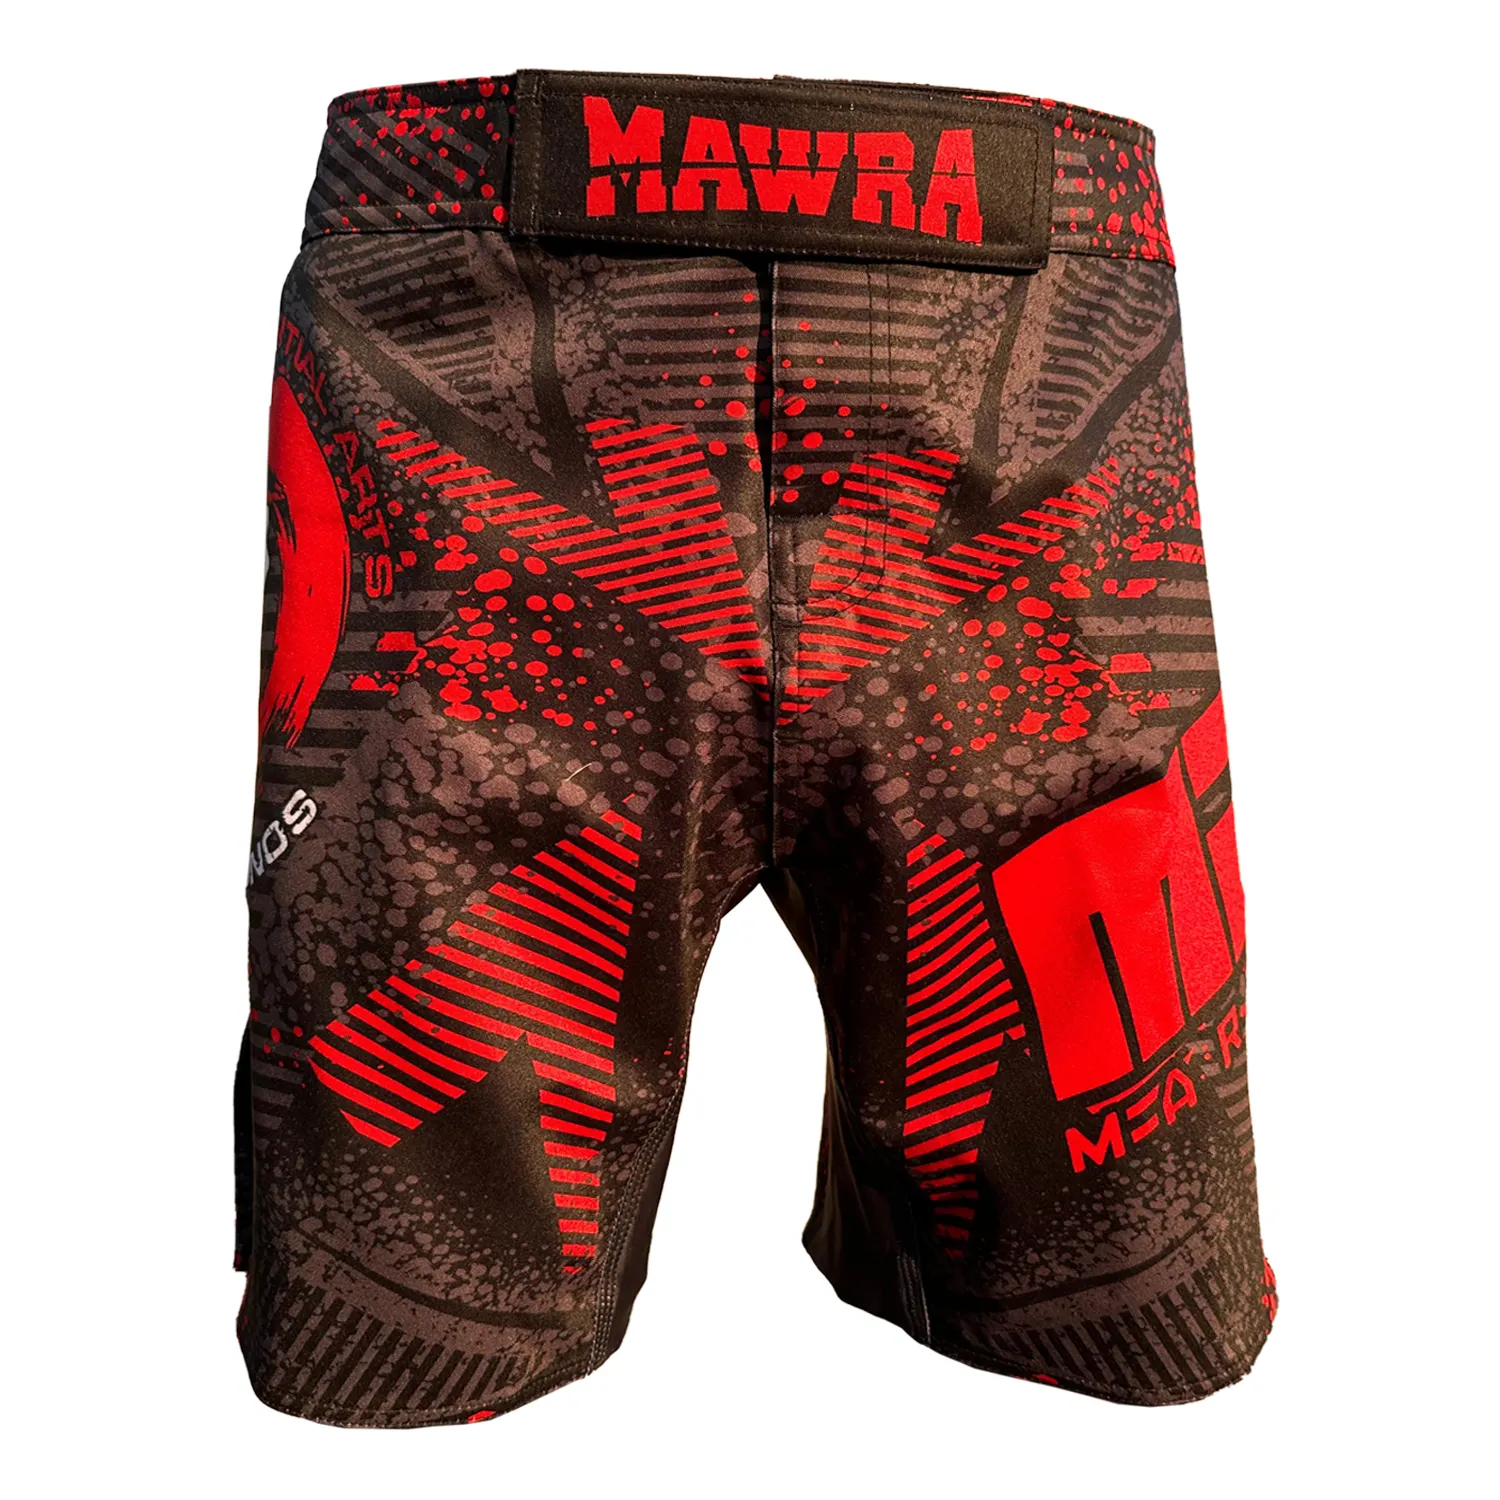 Premium alta qualità Mawra MMA Shorts per gli uomini in poliestere Spandex tessuto elasticizzato UFC Fight Training MMA Shorts Fashion Wear